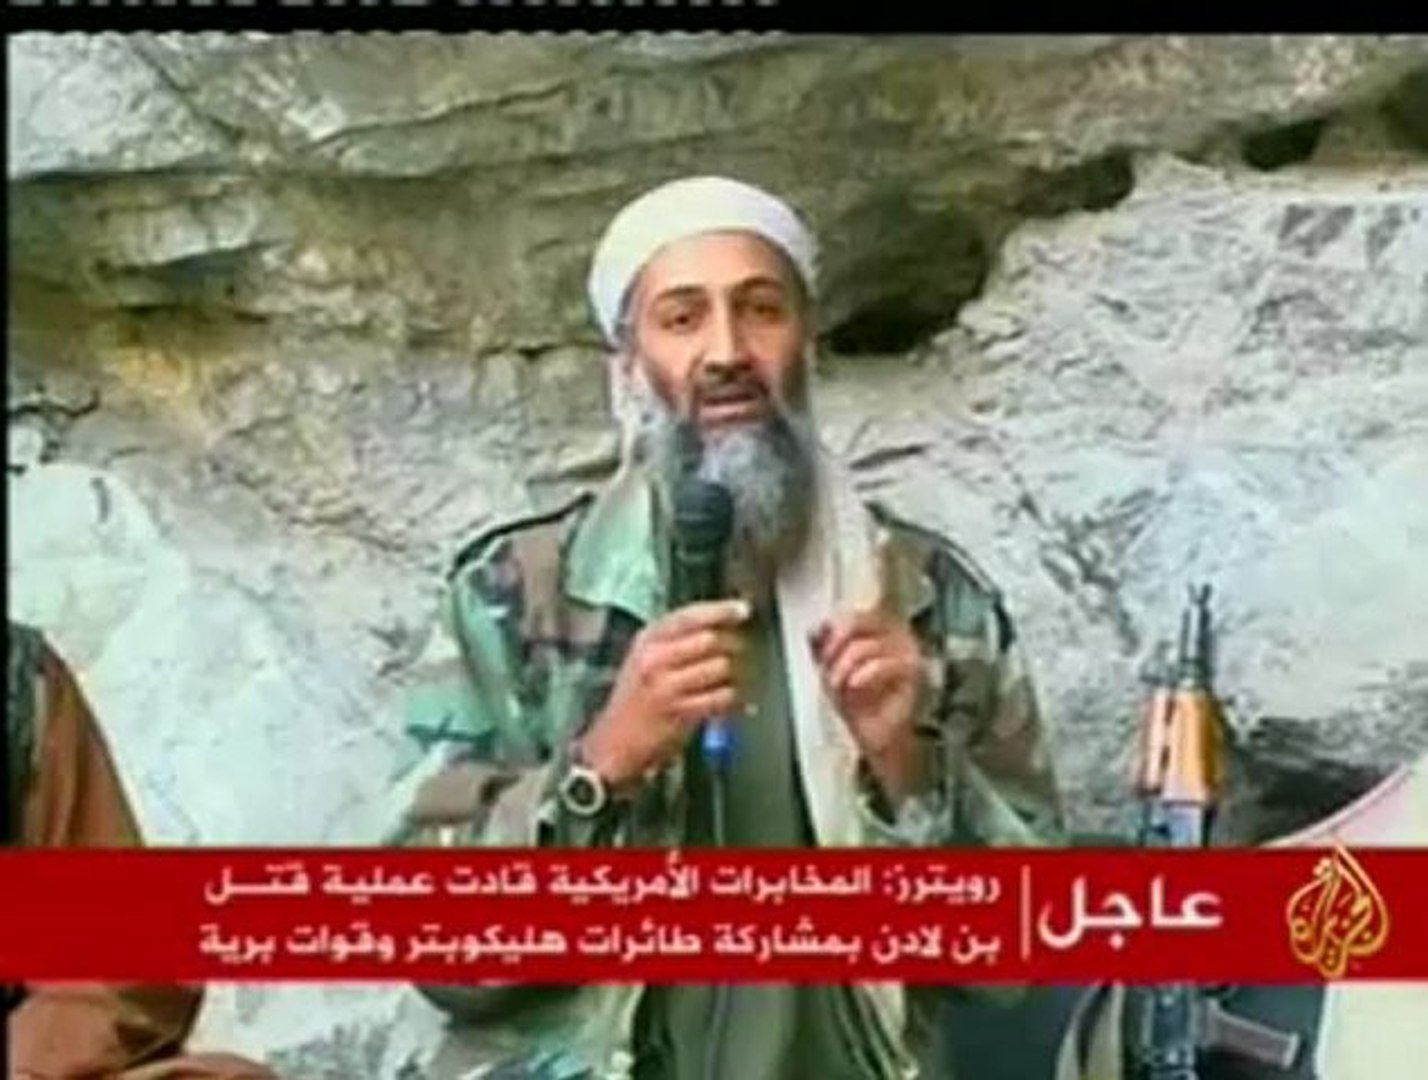 أسامة بن لادن ..سيرة القاعدة زعيمآ وتنظيمآ - فيديو Dailymotion